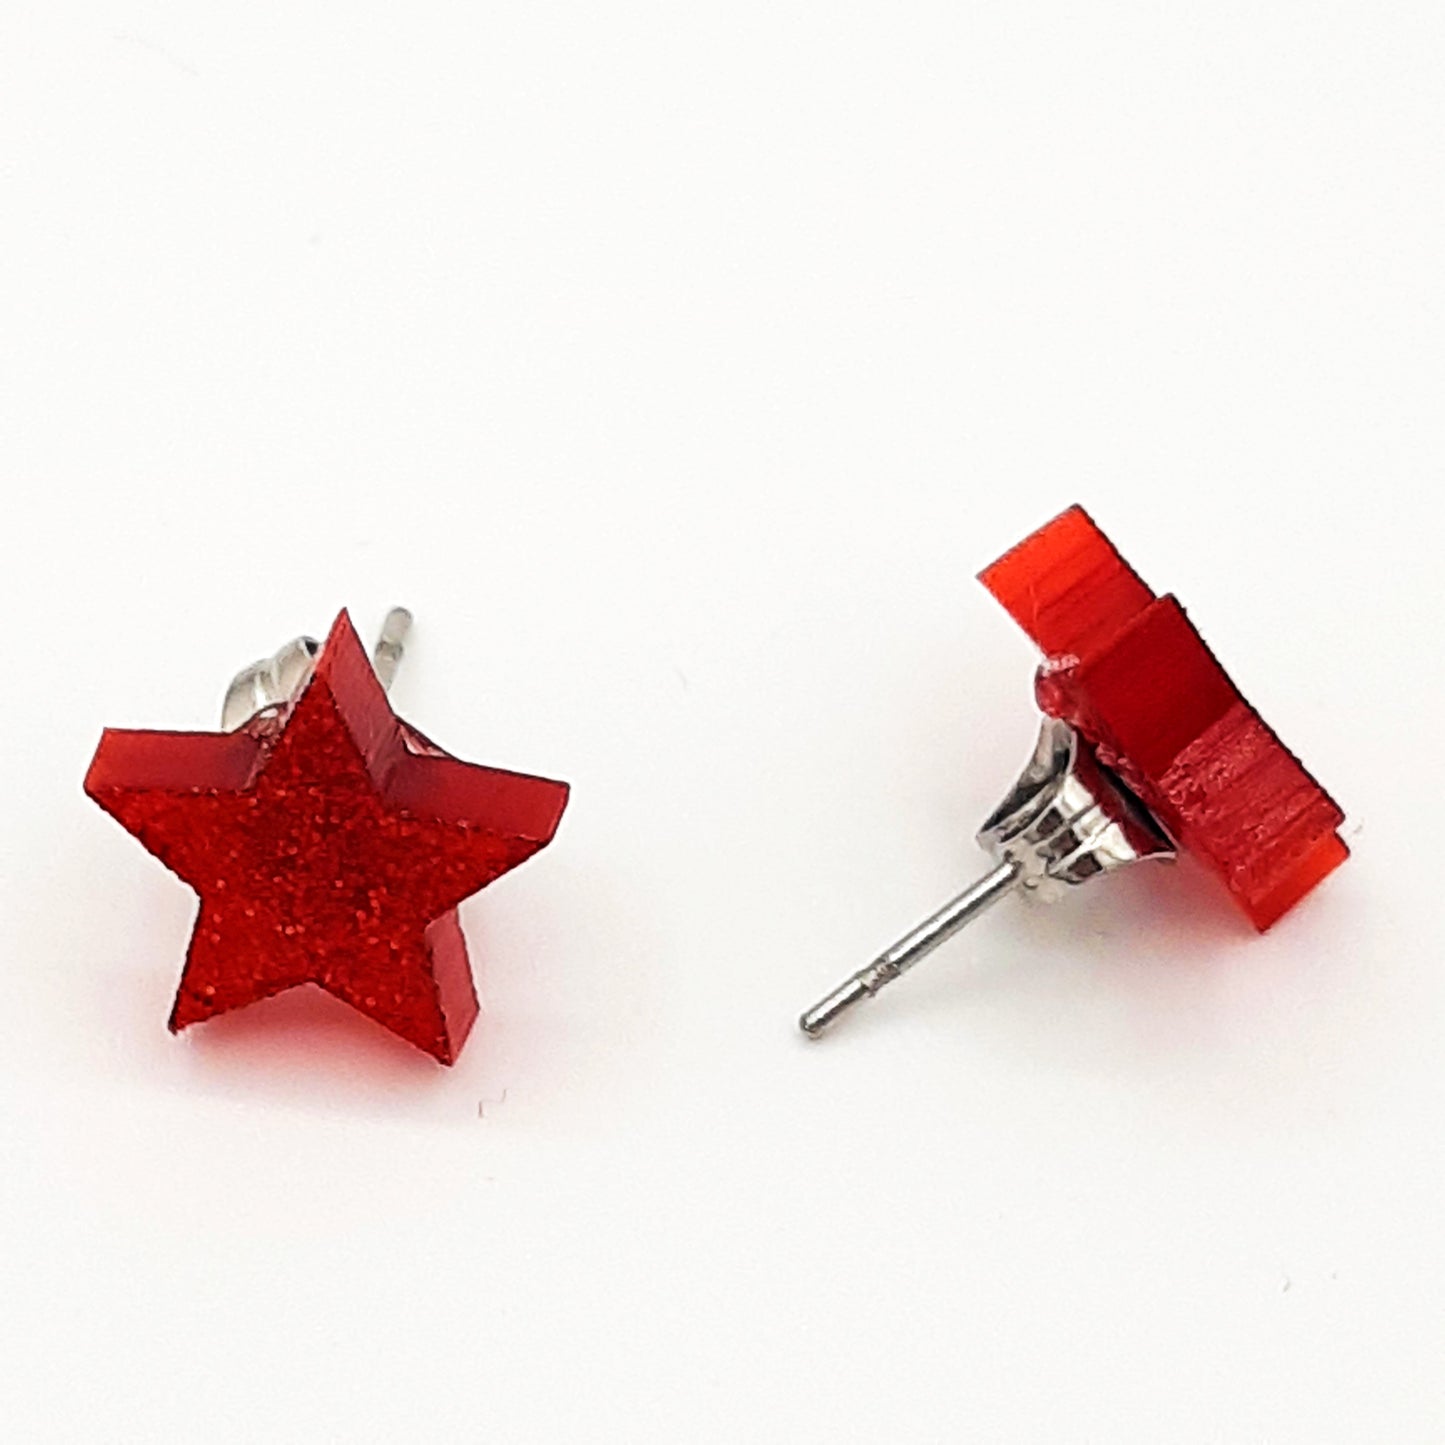 Star laser cut acrylic earrings - red glitter